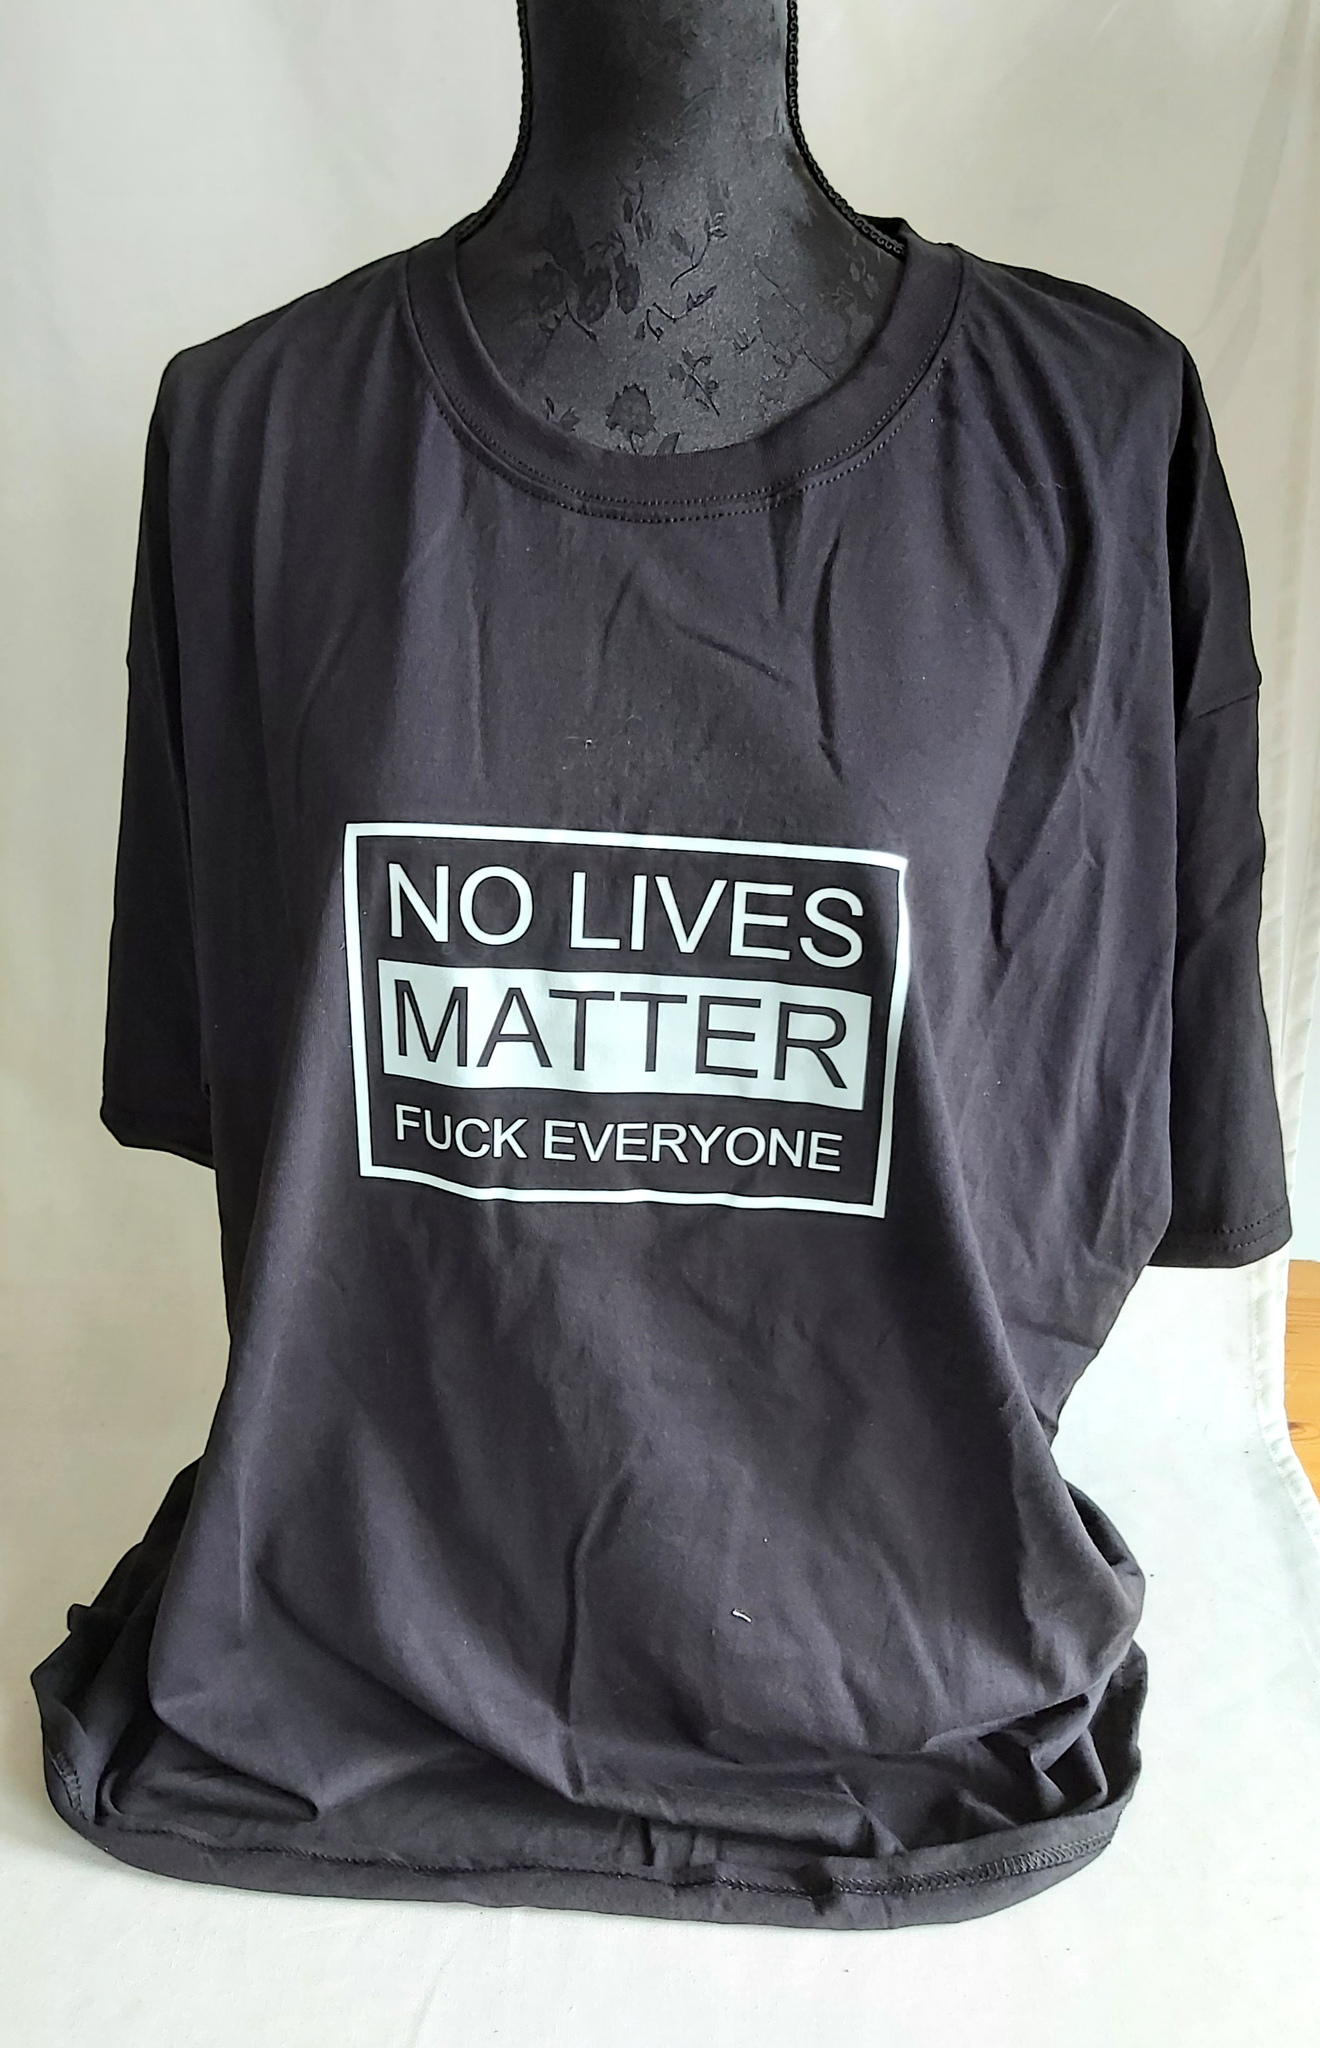 No lives matter t-shirt